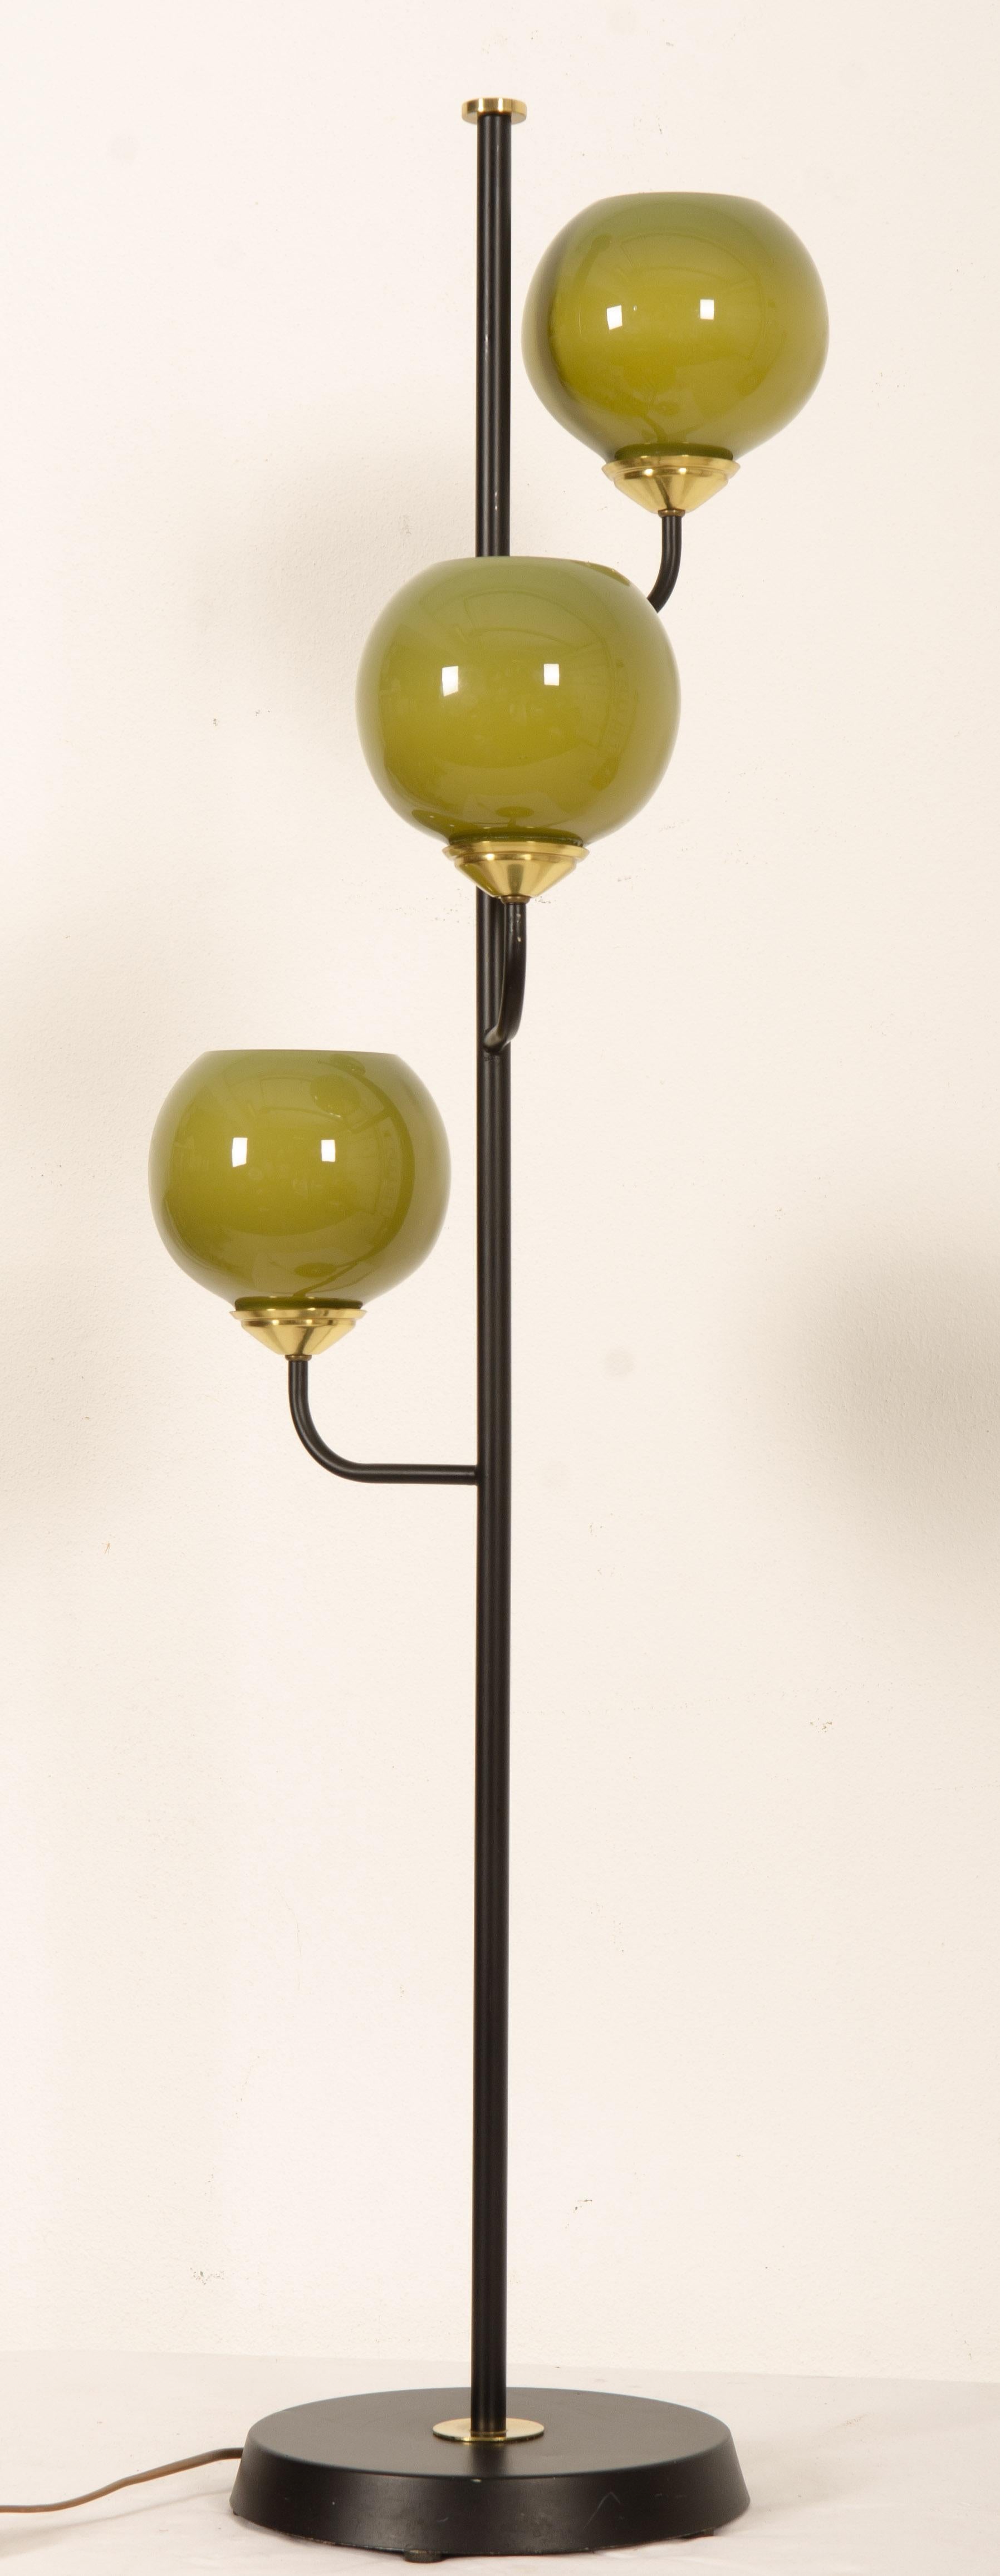 Sockel aus Gusseisen, drei Arme mit kugelförmigen Schirmen aus grünem Glas und jeweils mit E27-Fassungen aus Bakelit ausgestattet. Entworfen in Schweden in den 1970er Jahren.